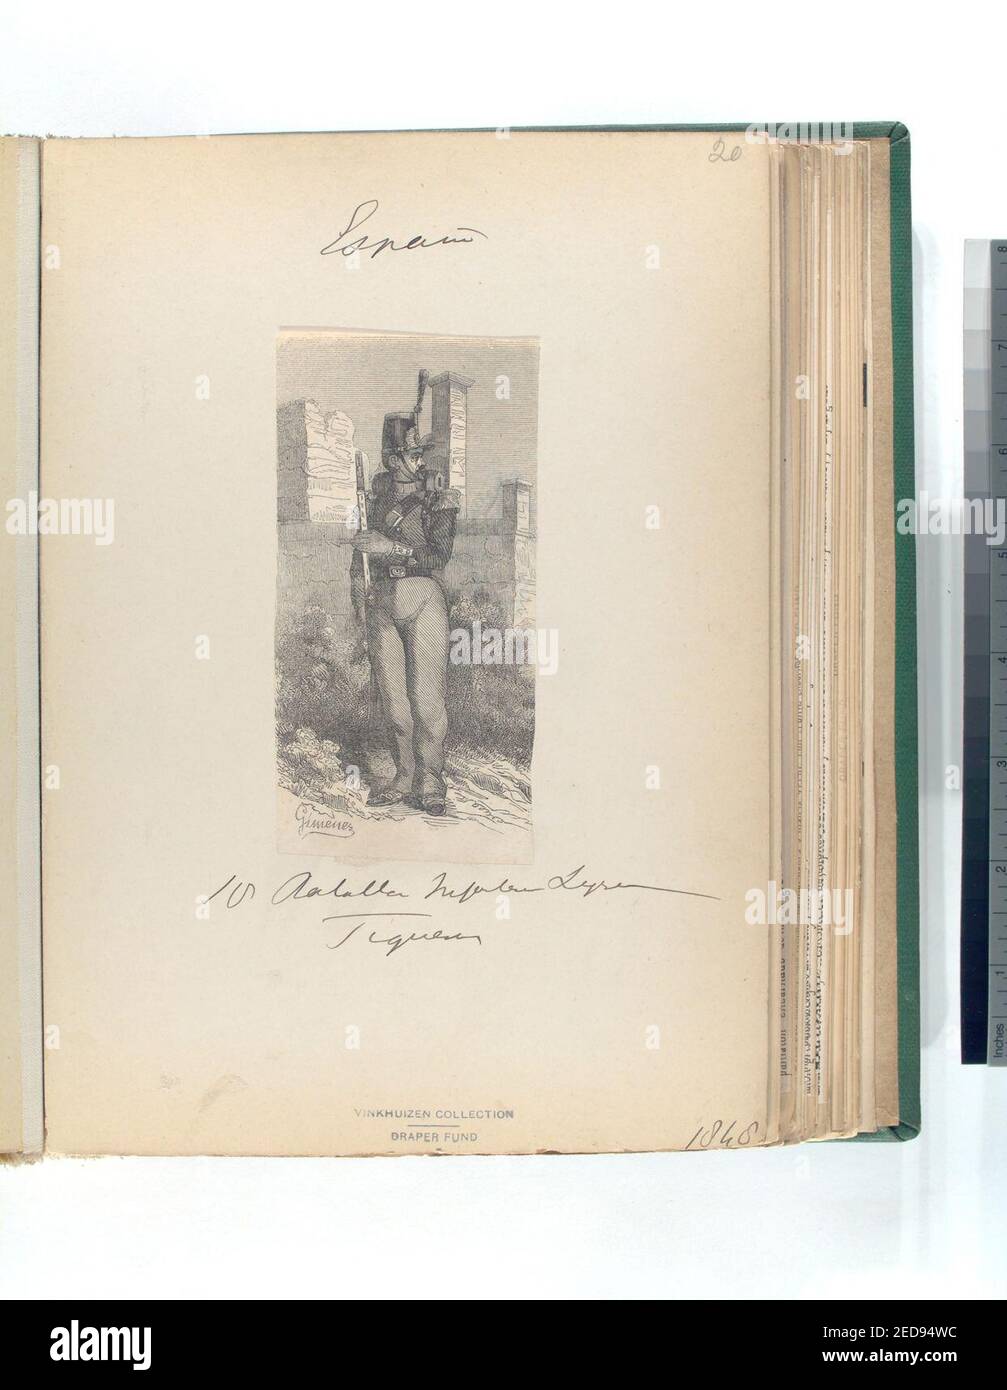 16 Batallon (de) Infanteria Ligera . Piquero (-) 1848 Stock Photo